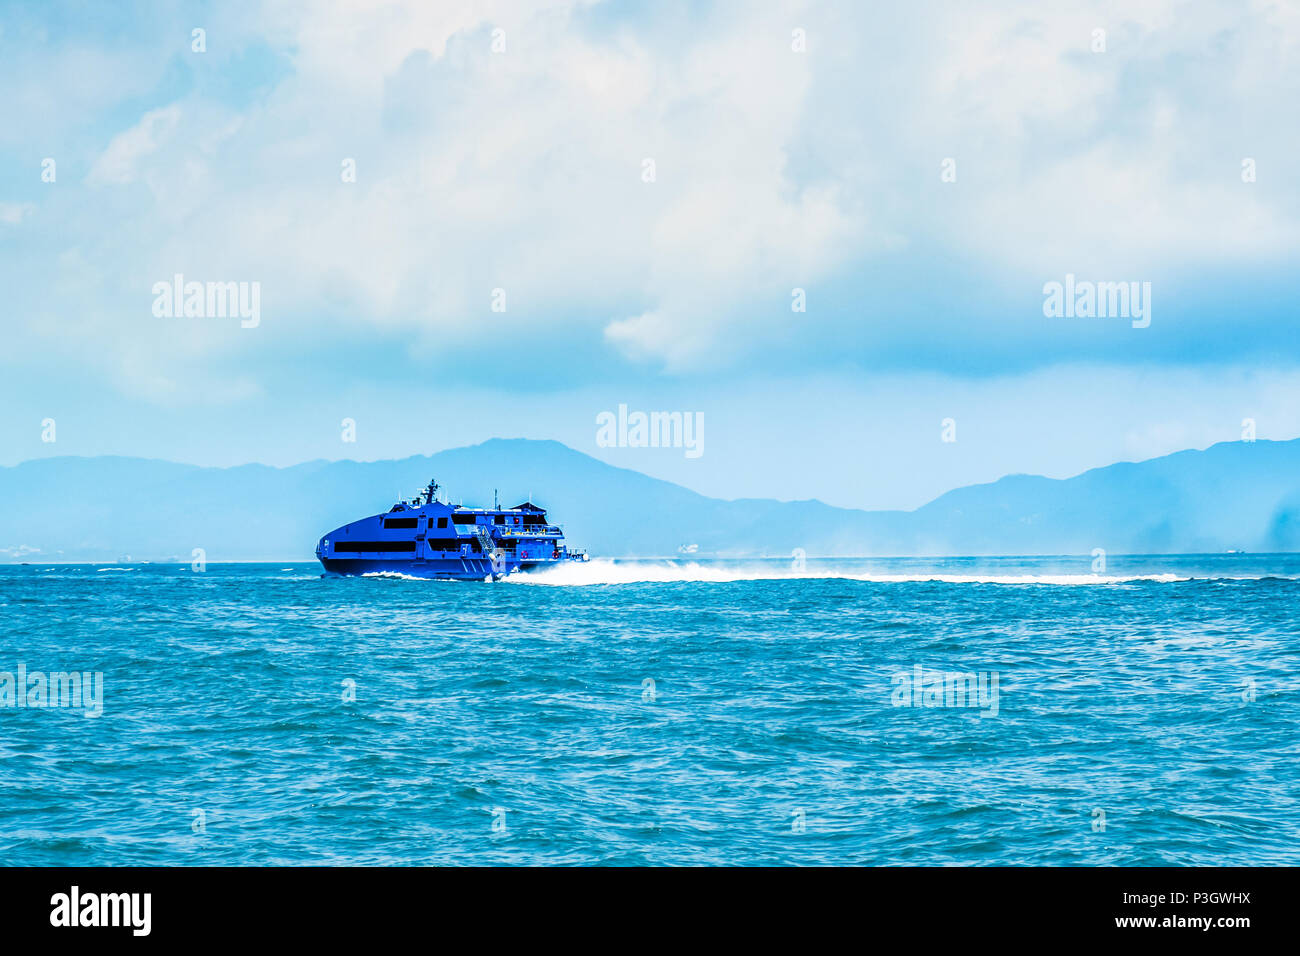 Jet d'eau à grande vitesse bateau nautique passagers se déplaçant rapidement de Hong Kong à Macao (jeu d'Asie centrale). Journée ensoleillée, ciel nuageux. Des voyages en Asie. Banque D'Images